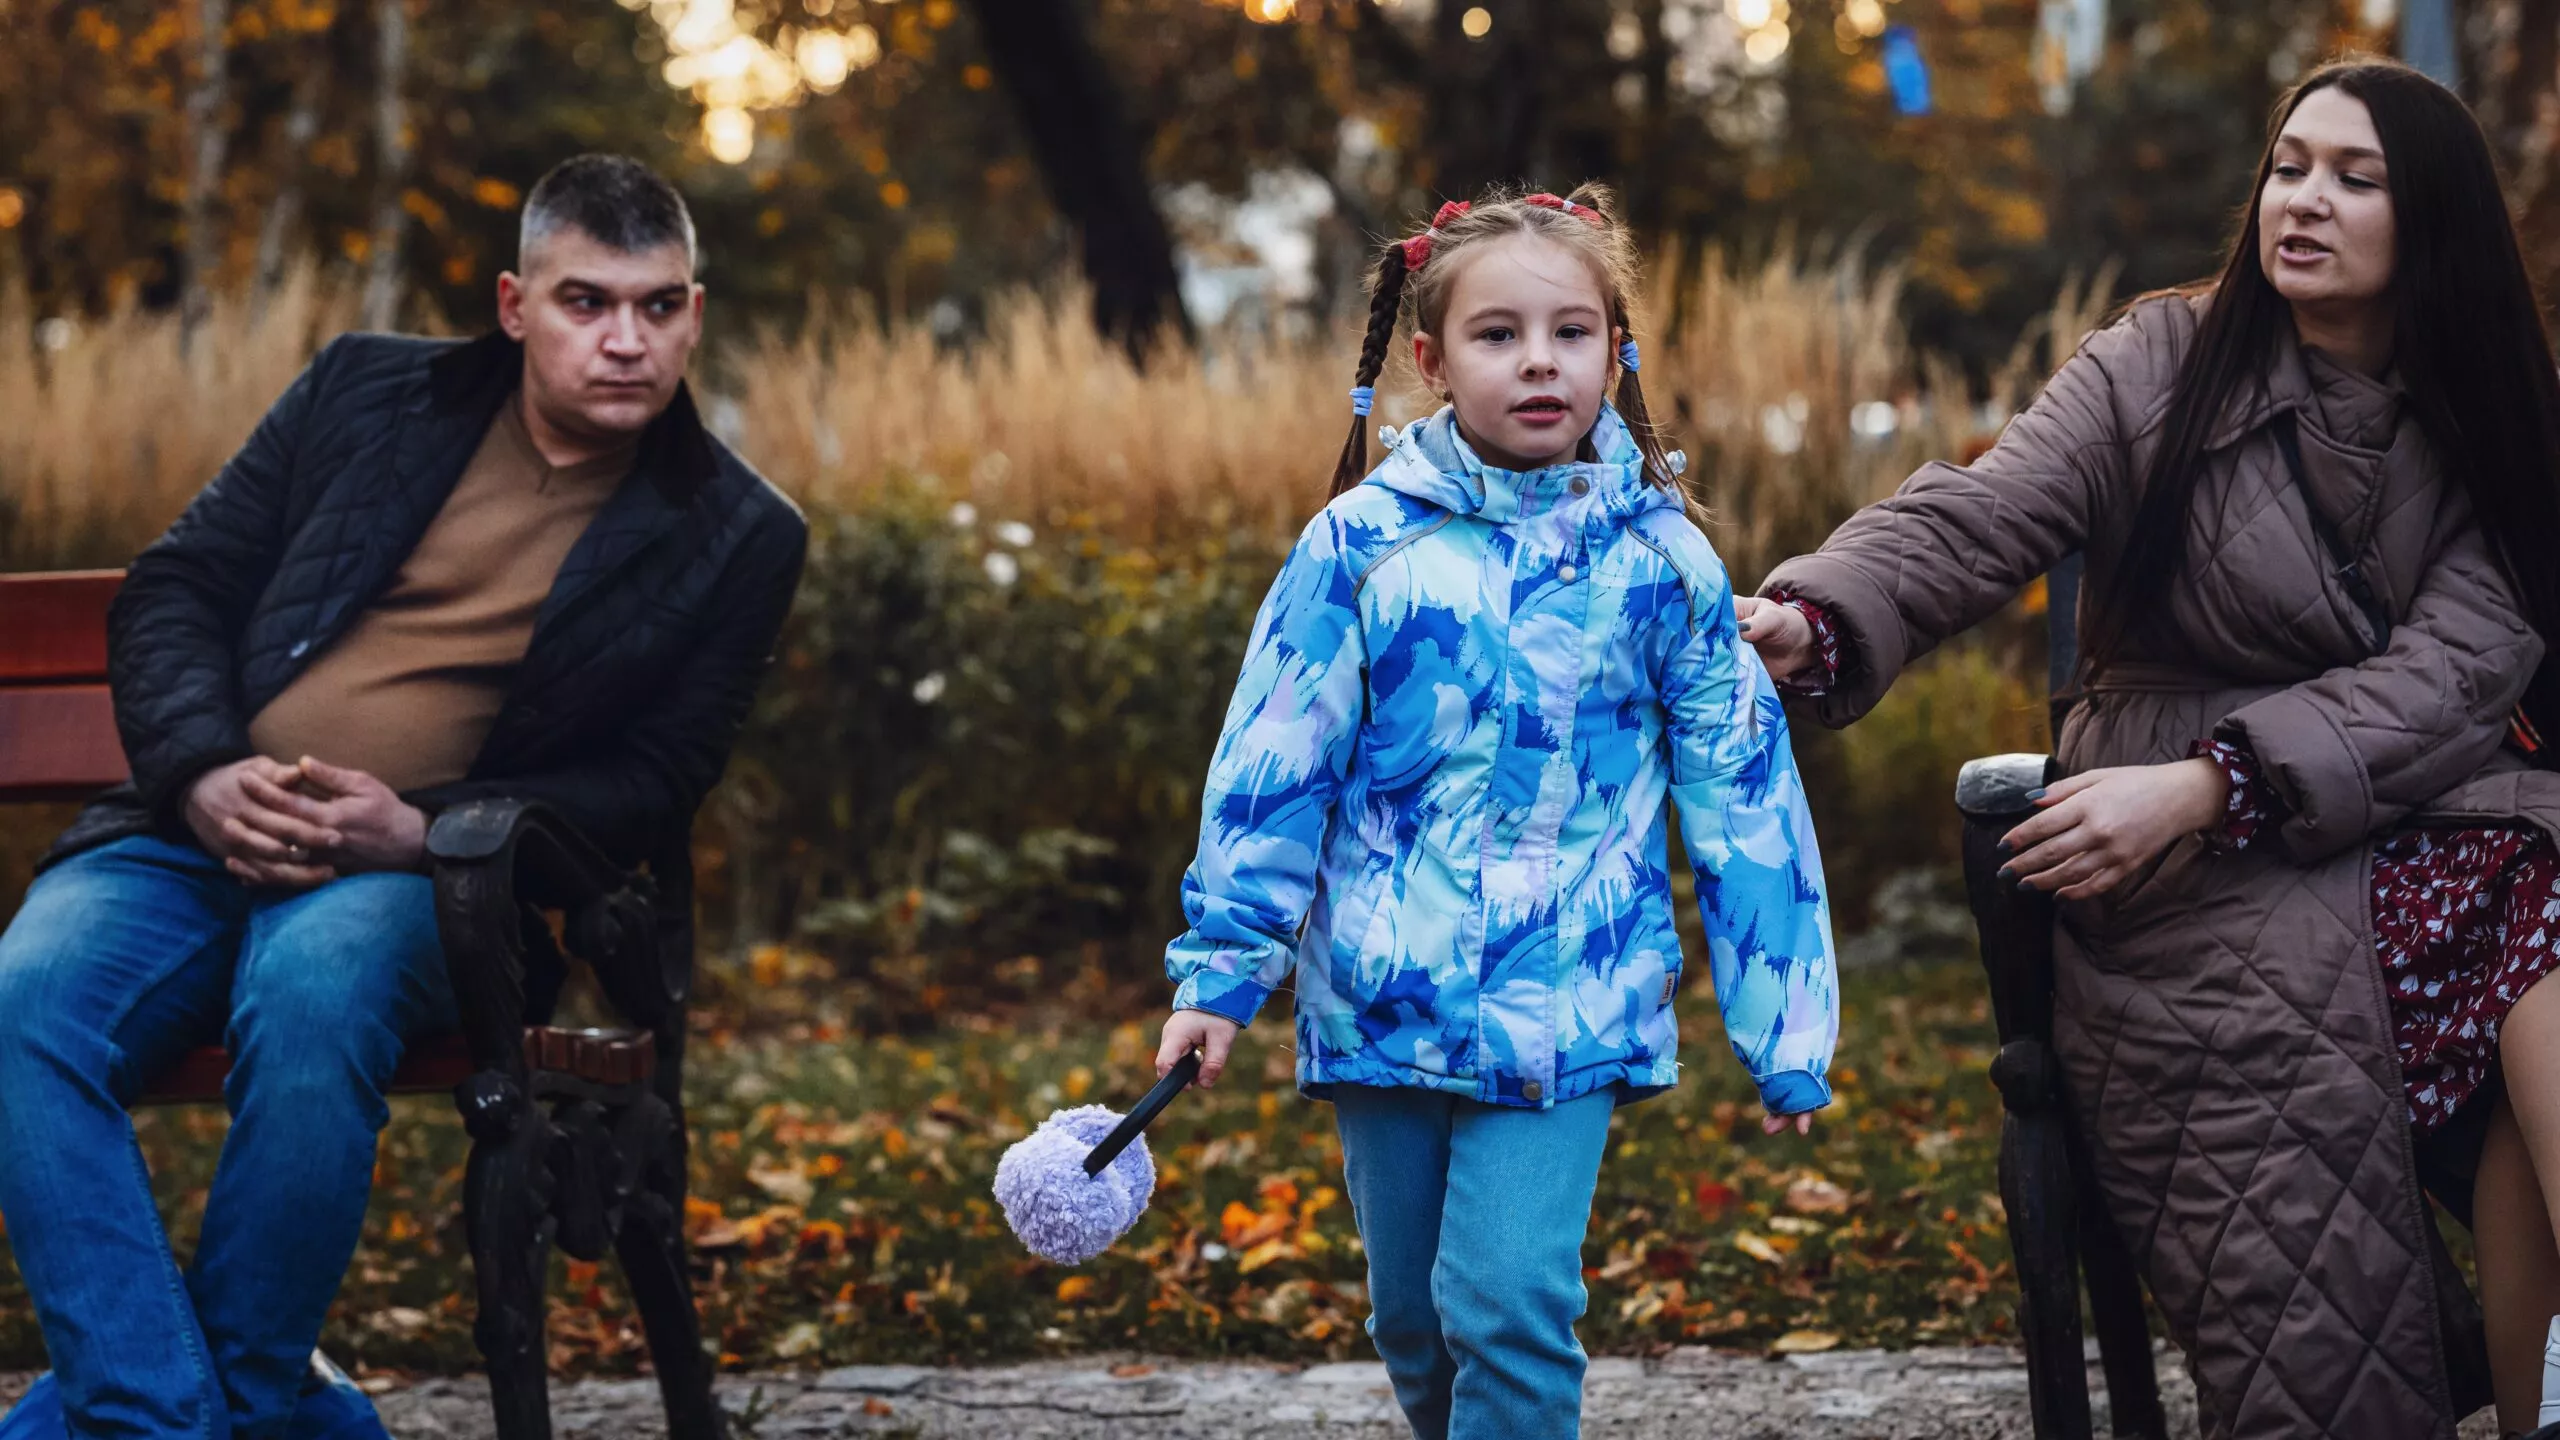 Sofia, 6, ja äiti ja isä Ukrainassa. Kiova on heidän kotikaupunkinsa.